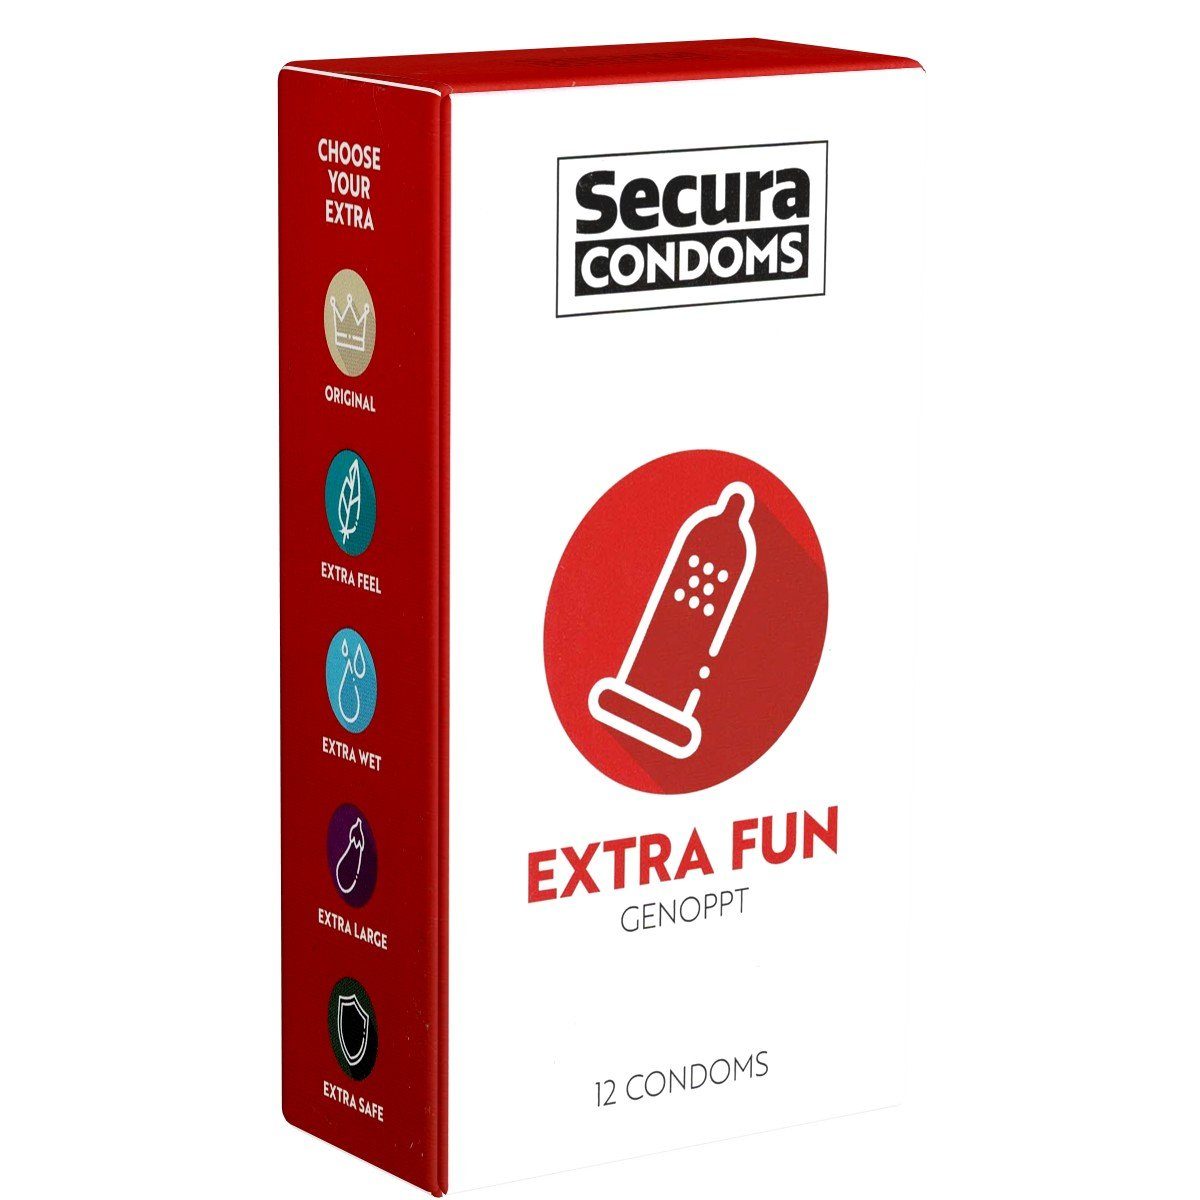 Secura Kondome Extra Fun Kondome mit Noppen, Packung mit, 12 St., Kondome mit aufregenden Stimulationsnoppen, genoppte Kondome für intensiven Extra-Spaß